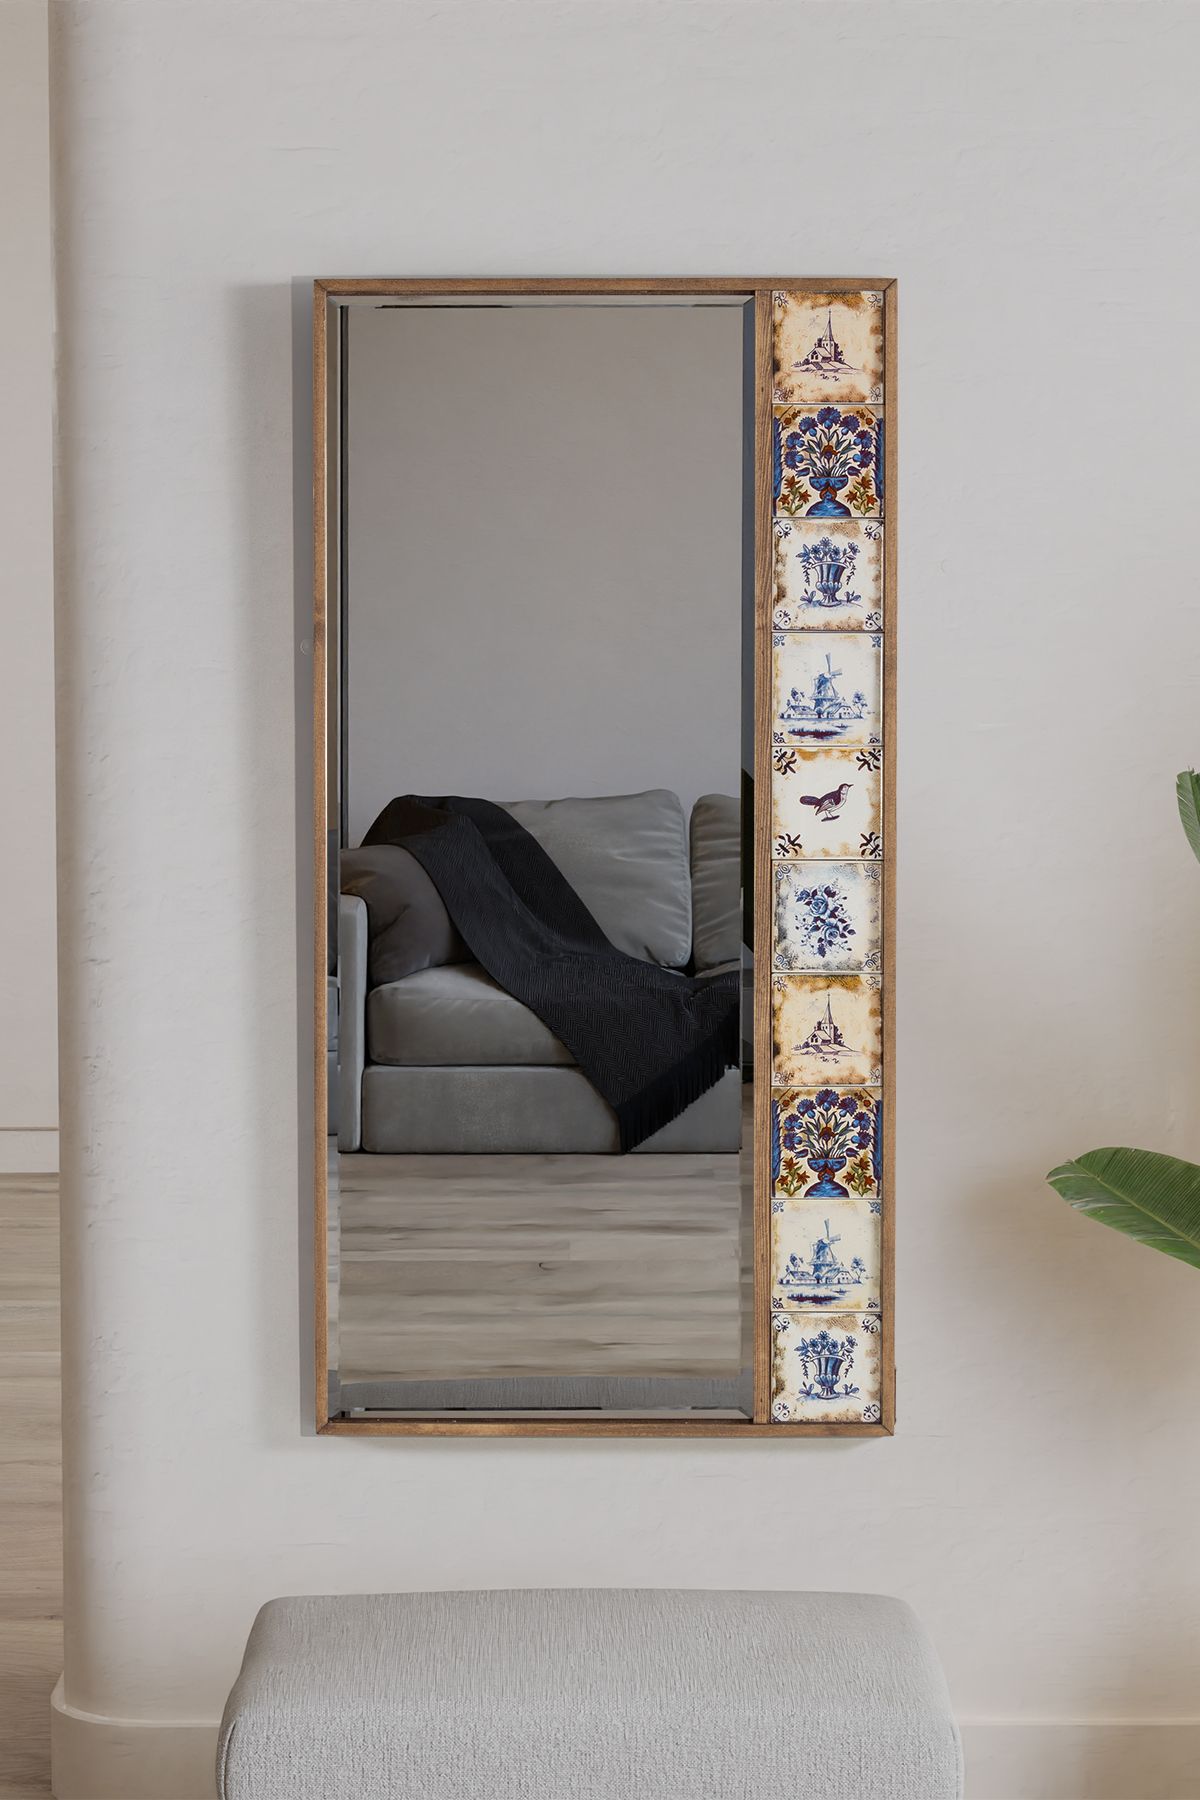 bluecape Selanik Çini Seramik 50x100 Cm Doğal Ağaç Çerçeveli Salon Ofis Mutfak Duvar Konsol Boy Aynası